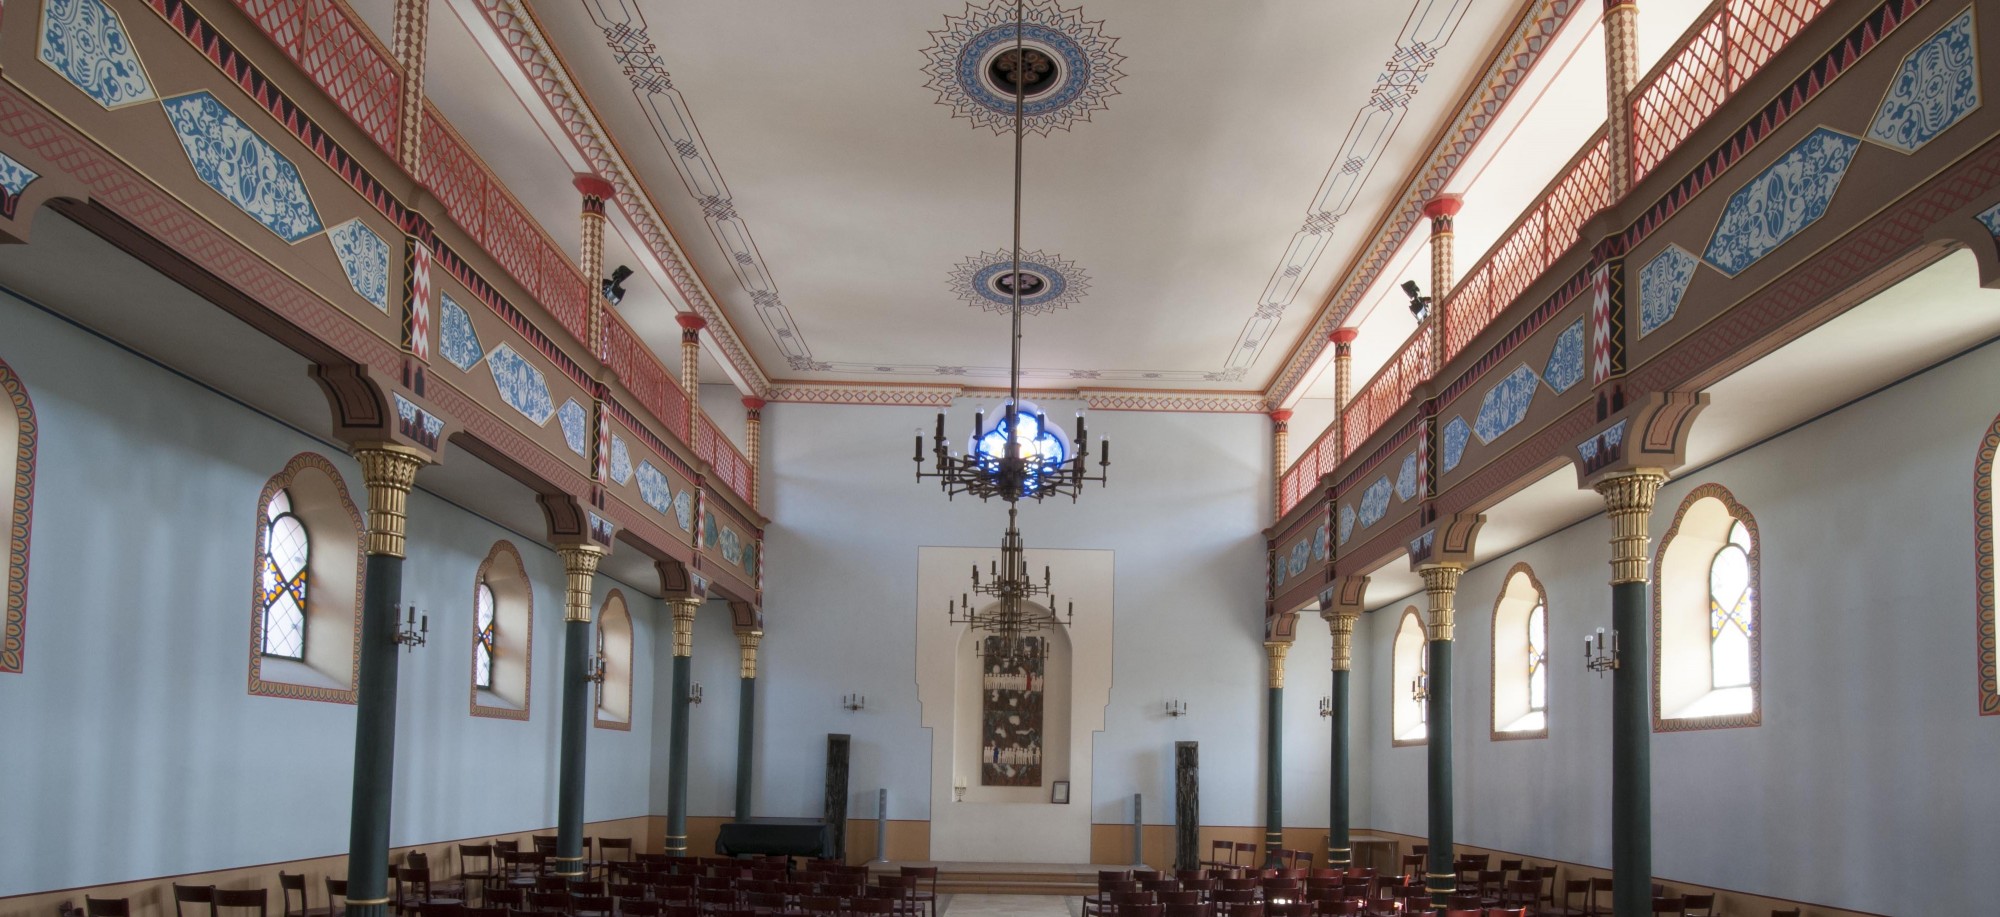 Innenraum der Synagoge Binswangen mit Stuhlreihen, Frauenempore und Tora-Schrein. Führt zur Unterseite &quot;Binswangen&quot;.